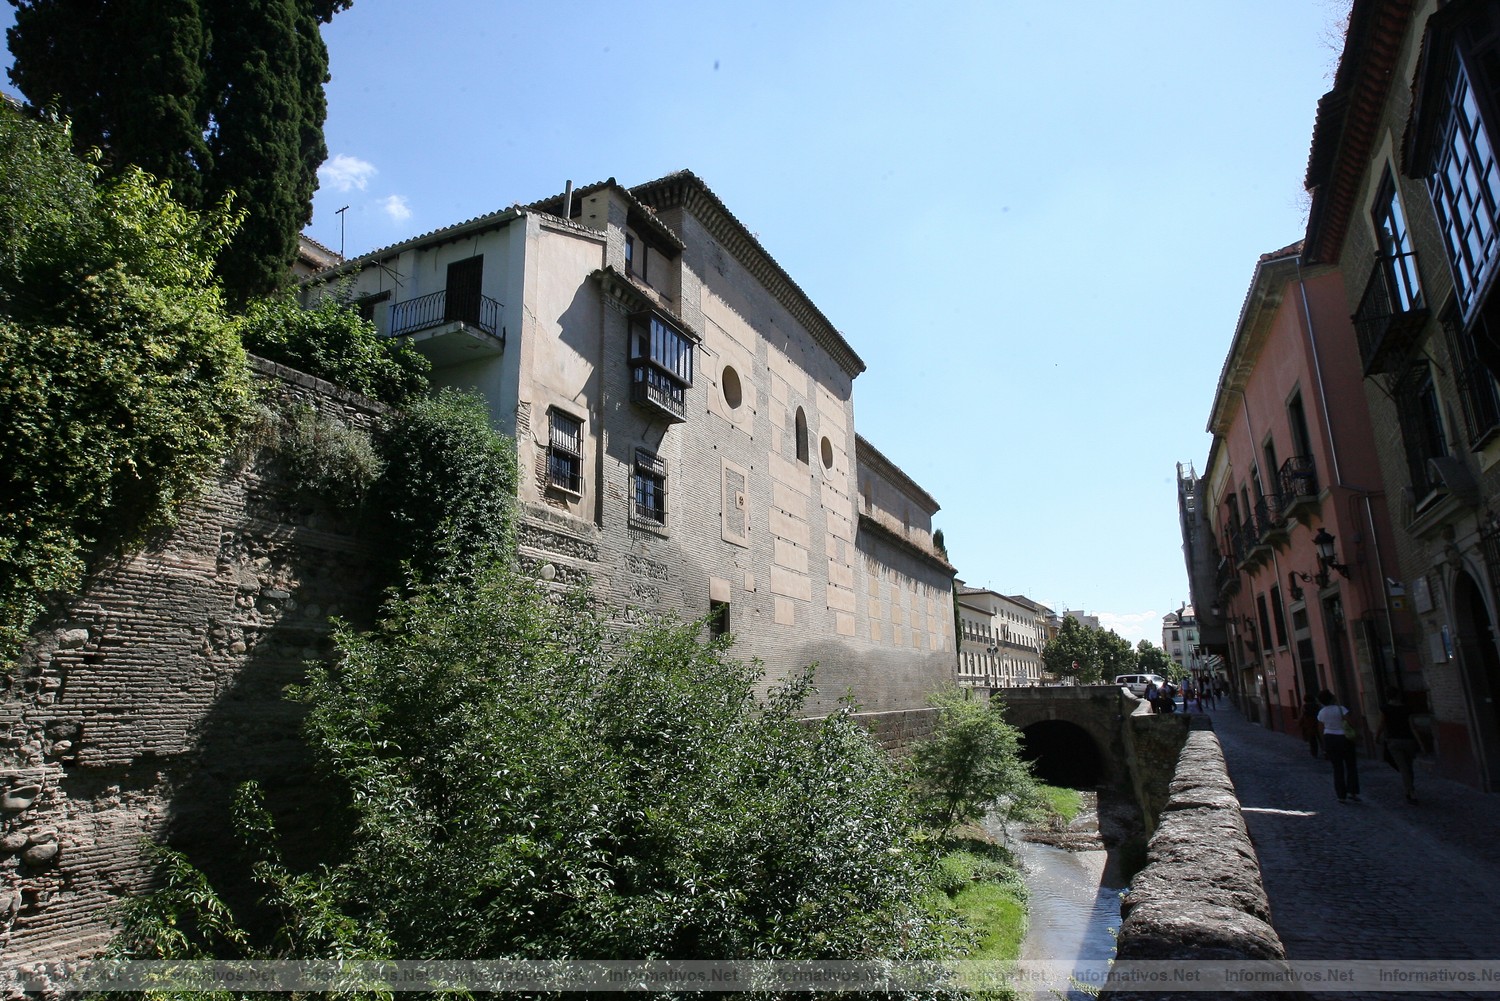 Granada, 8 de Junio de 2011.- Visita al Albaicn de Granada